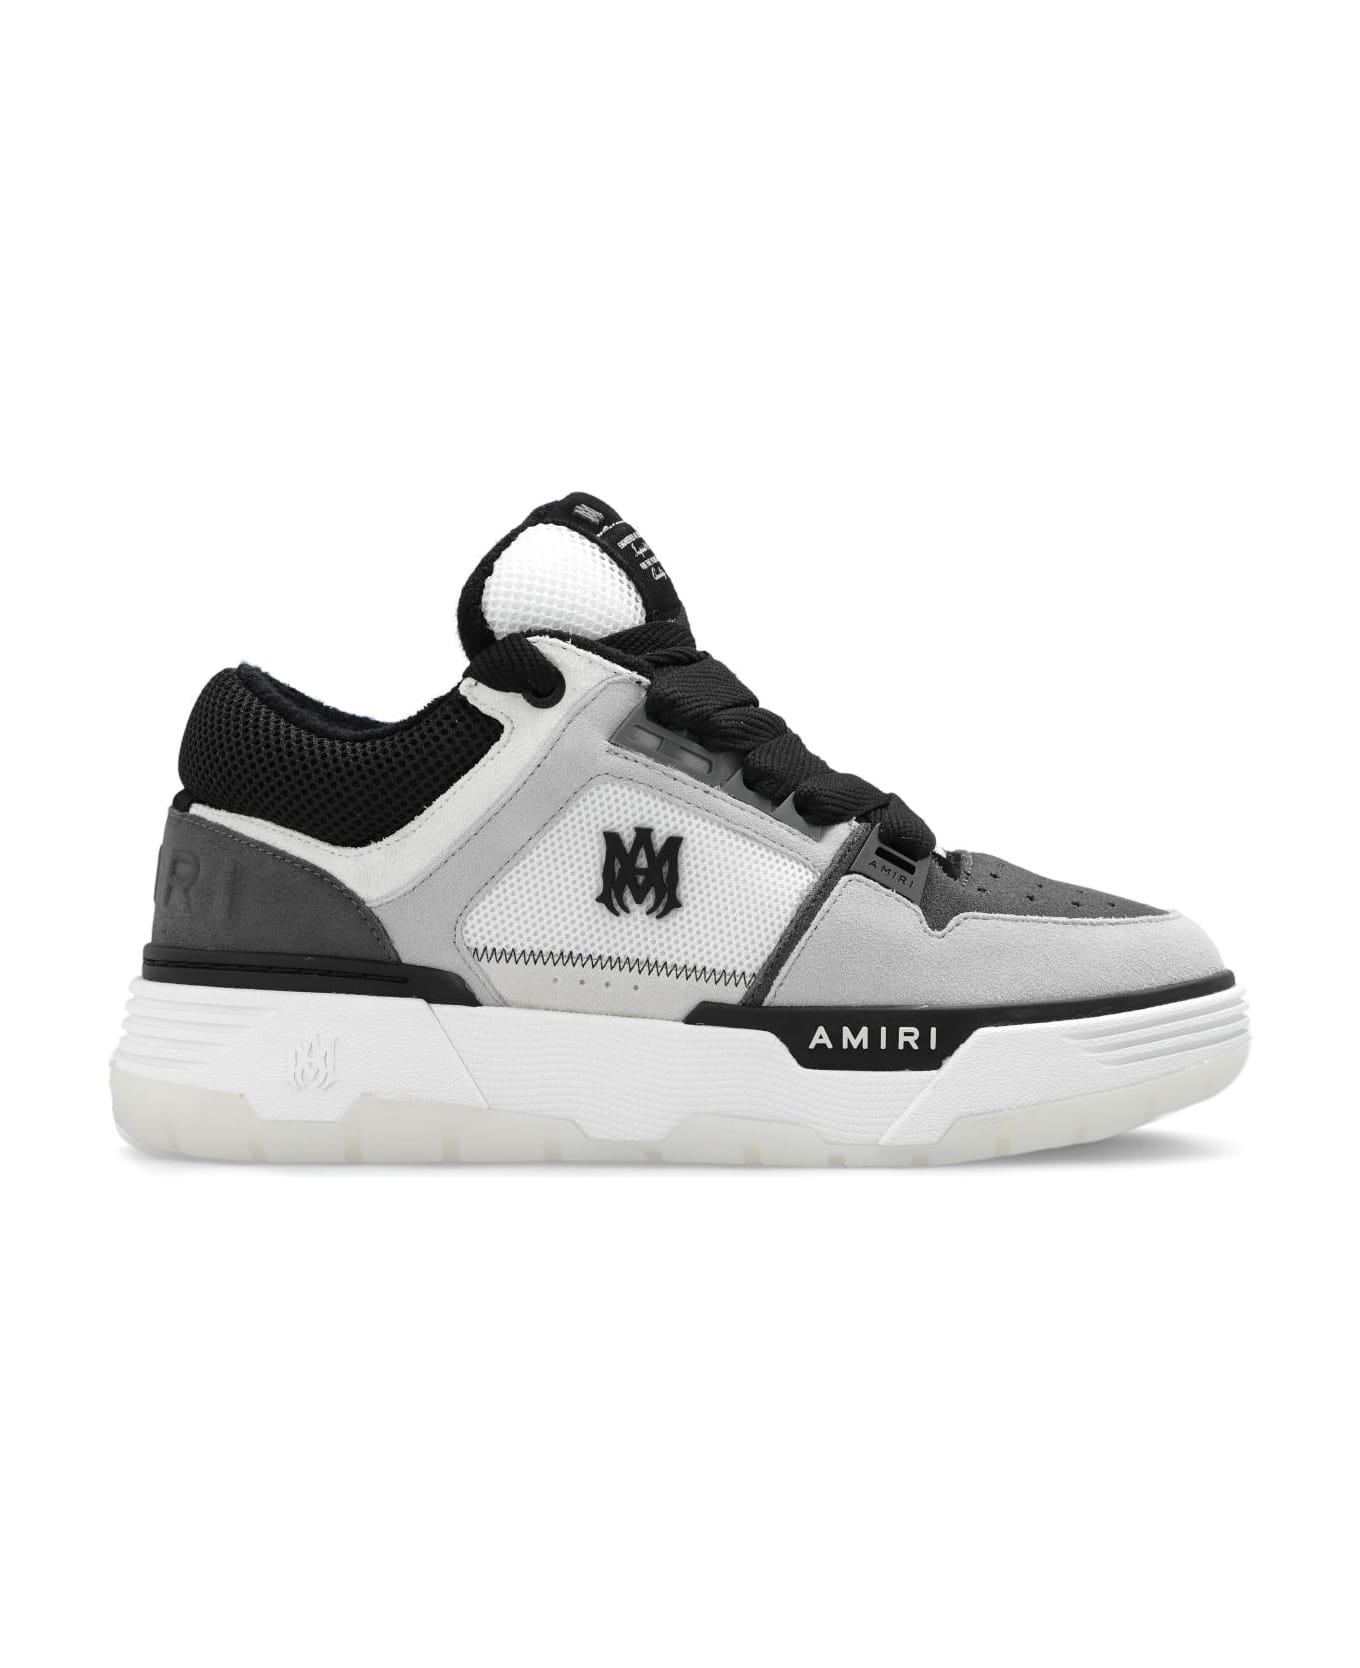 AMIRI 'ma-1' Sneakers - Black スニーカー